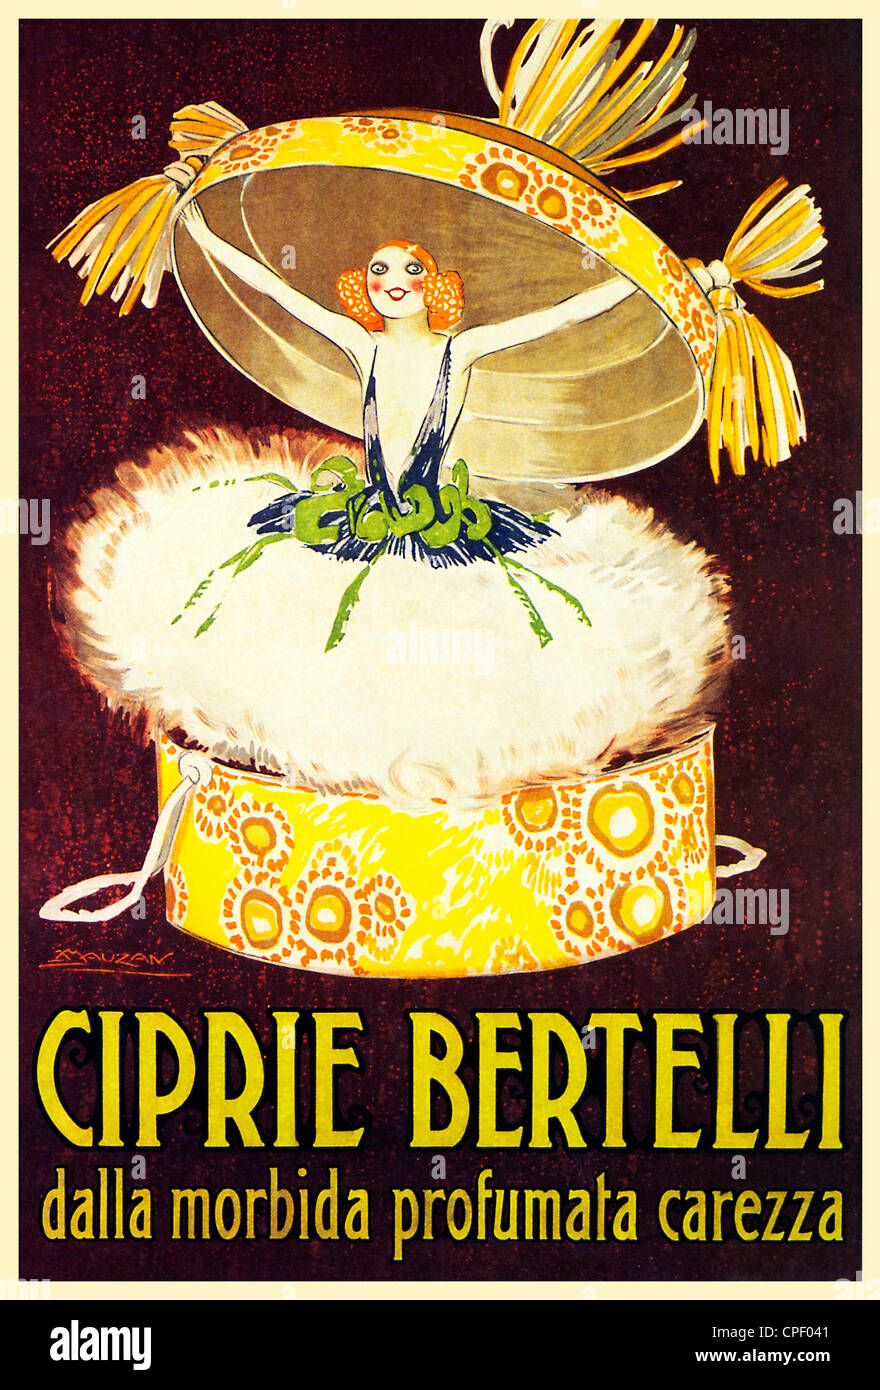 Ciprie Bertelli, 1921 poster per l'Italiano cipria, profumata morbida carezza, prorompente della sua scatola Foto Stock